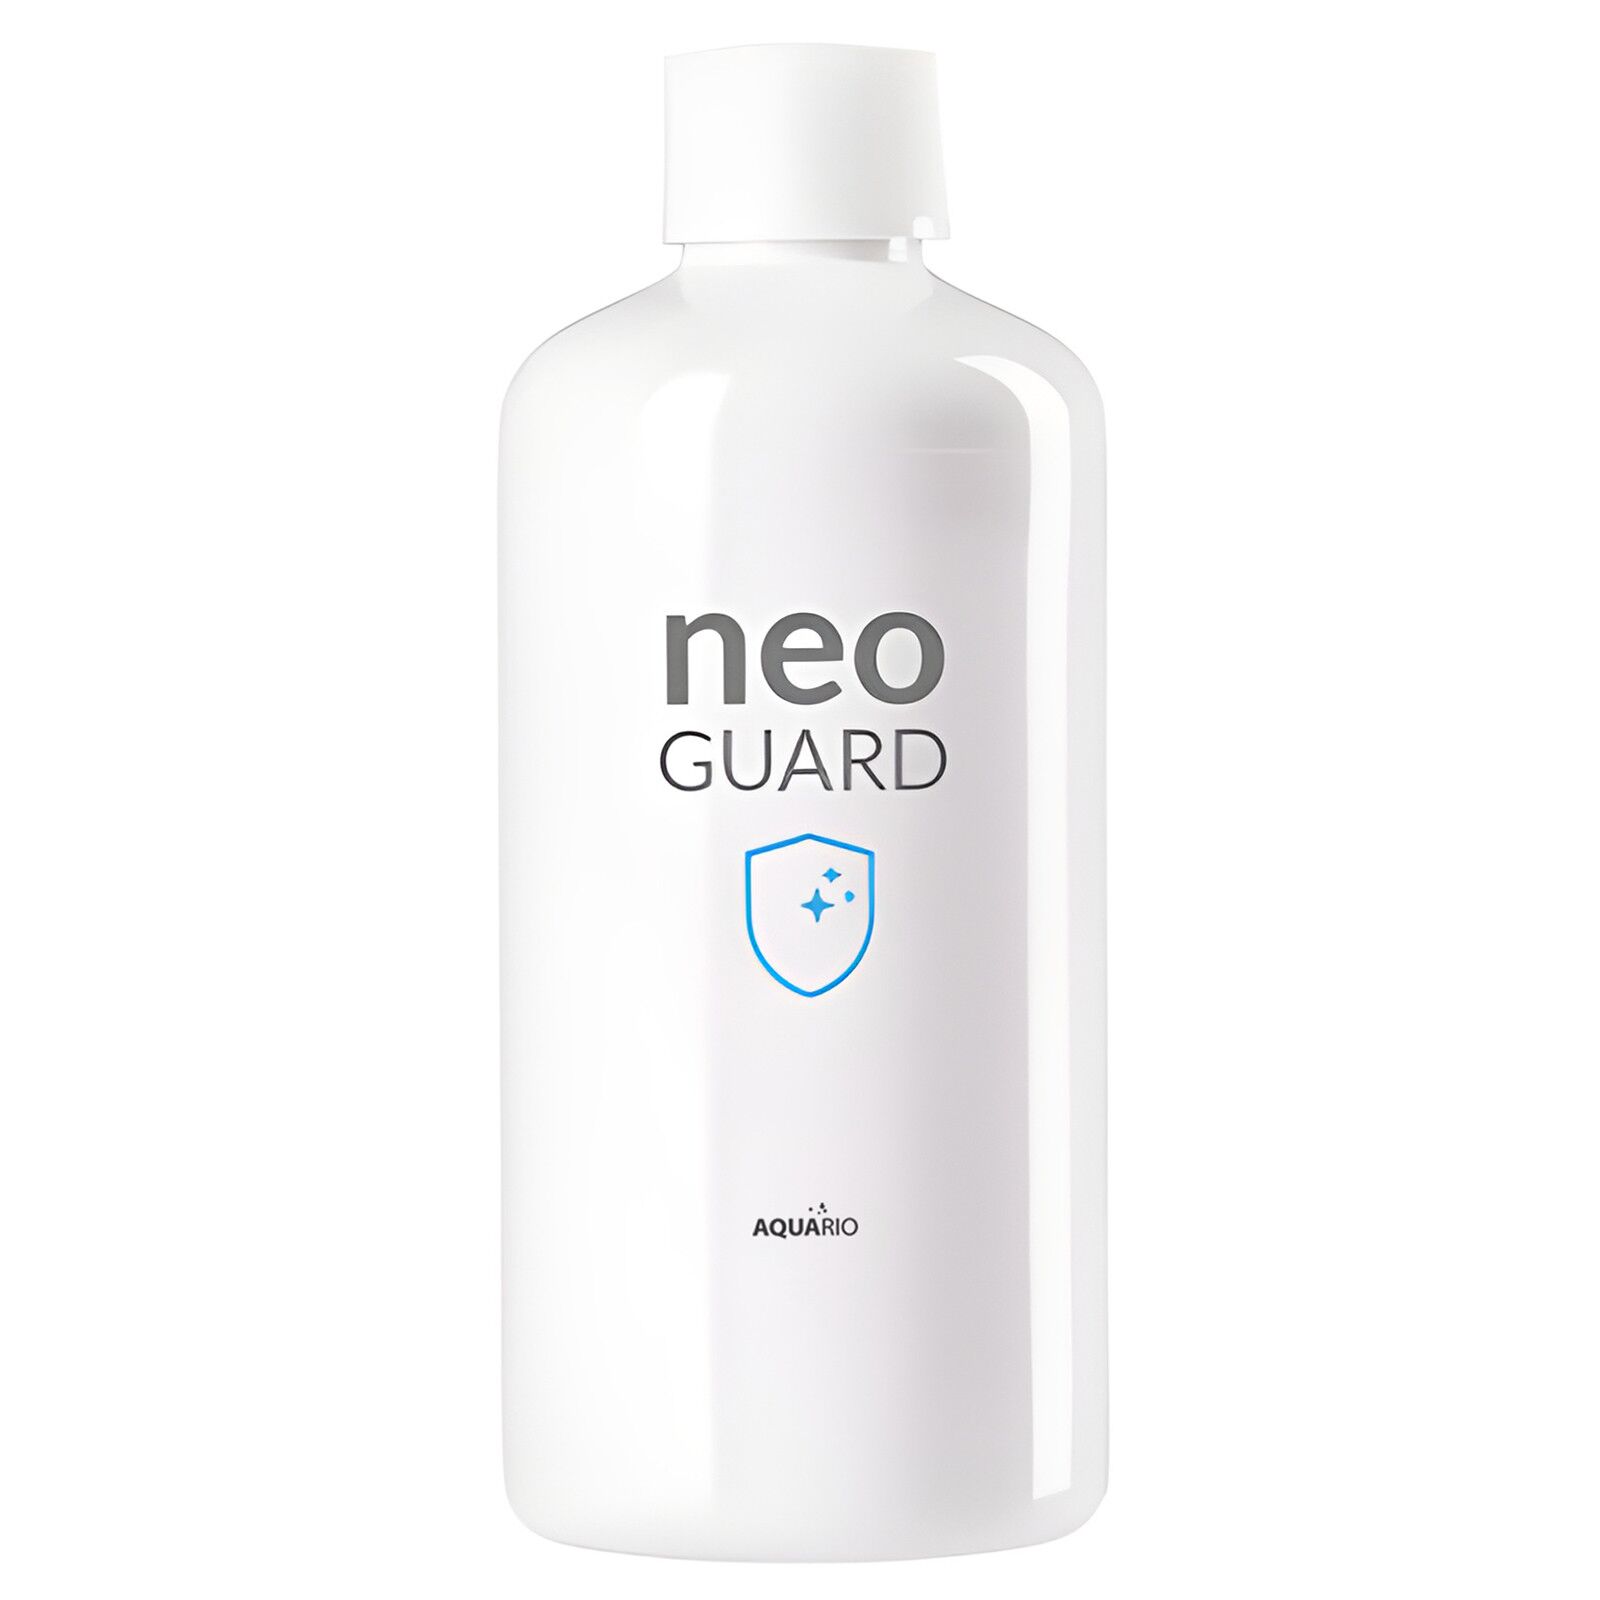 AQUARIO - Neo Guard - Wasseraufbereiter